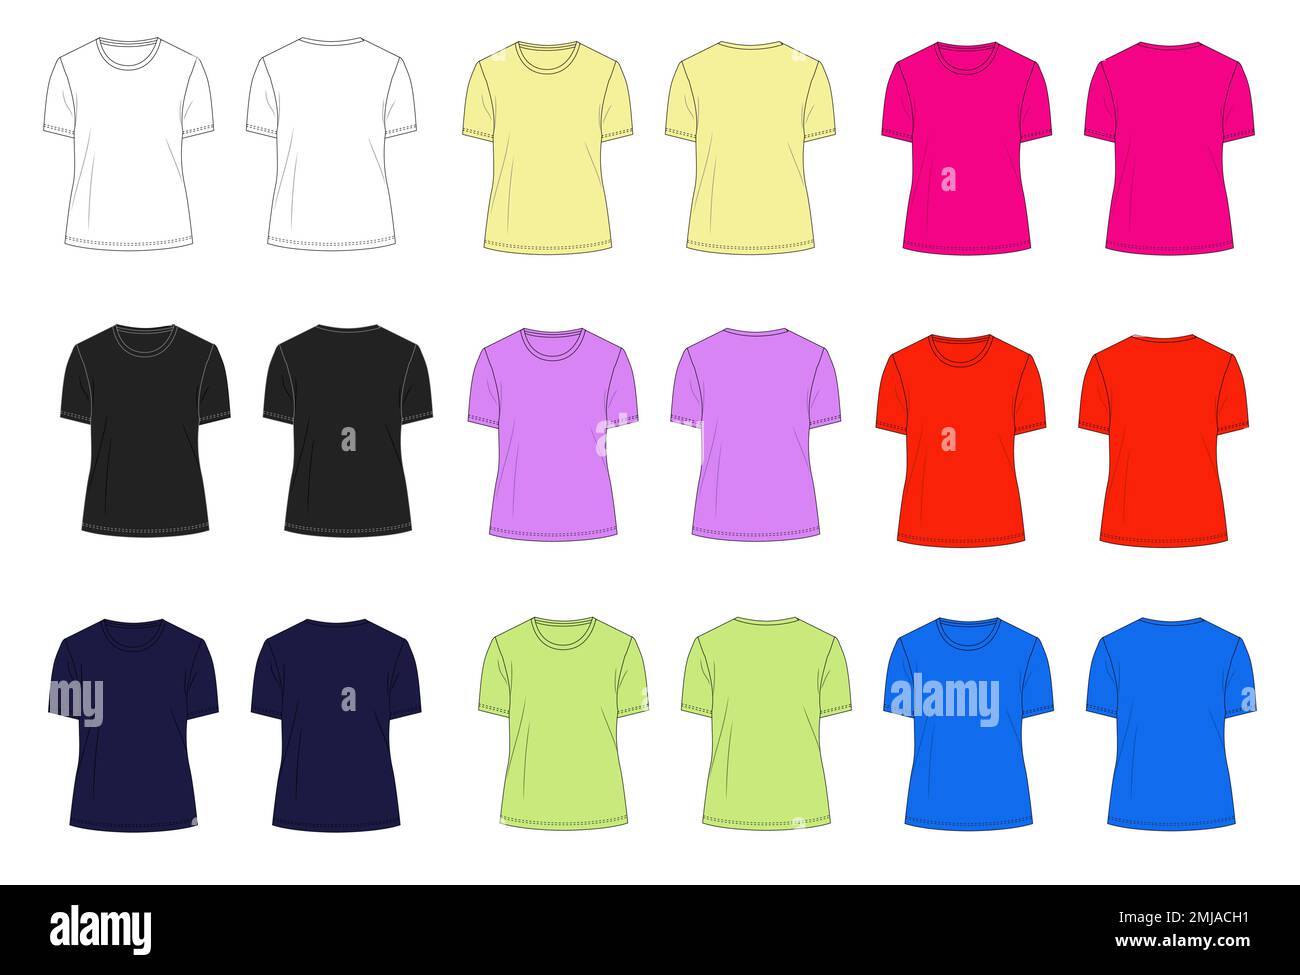 T-shirt a manica corta piatta multicolore modello tecnico di moda per donna e ragazza. Illustrazione grafica vettoriale mock up di abbigliamento Illustrazione Vettoriale